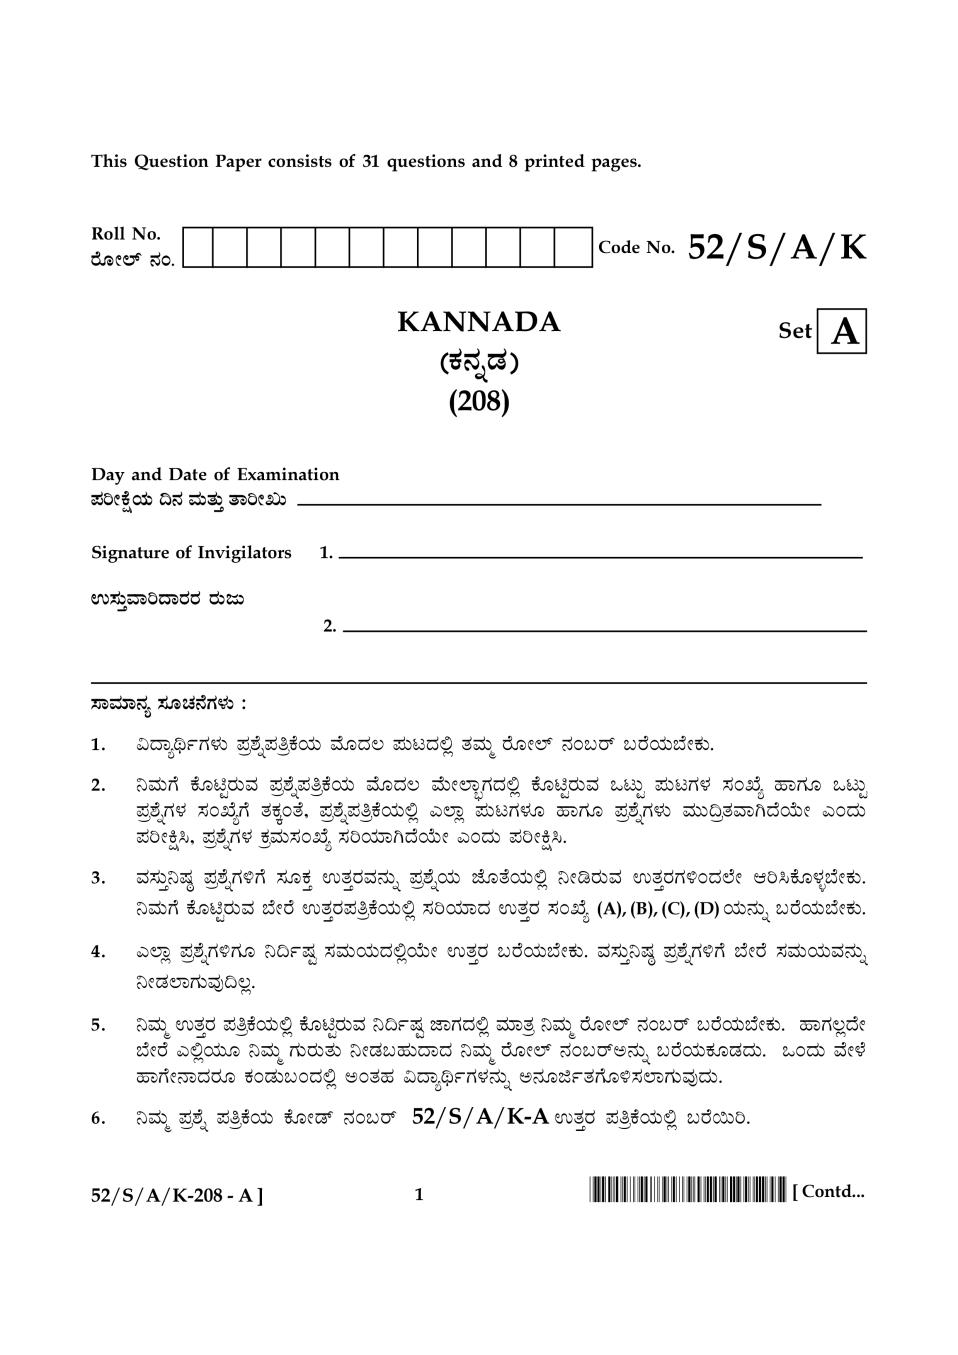 NIOS Class 10 Question Paper Apr 2016 - Kannada - Page 1